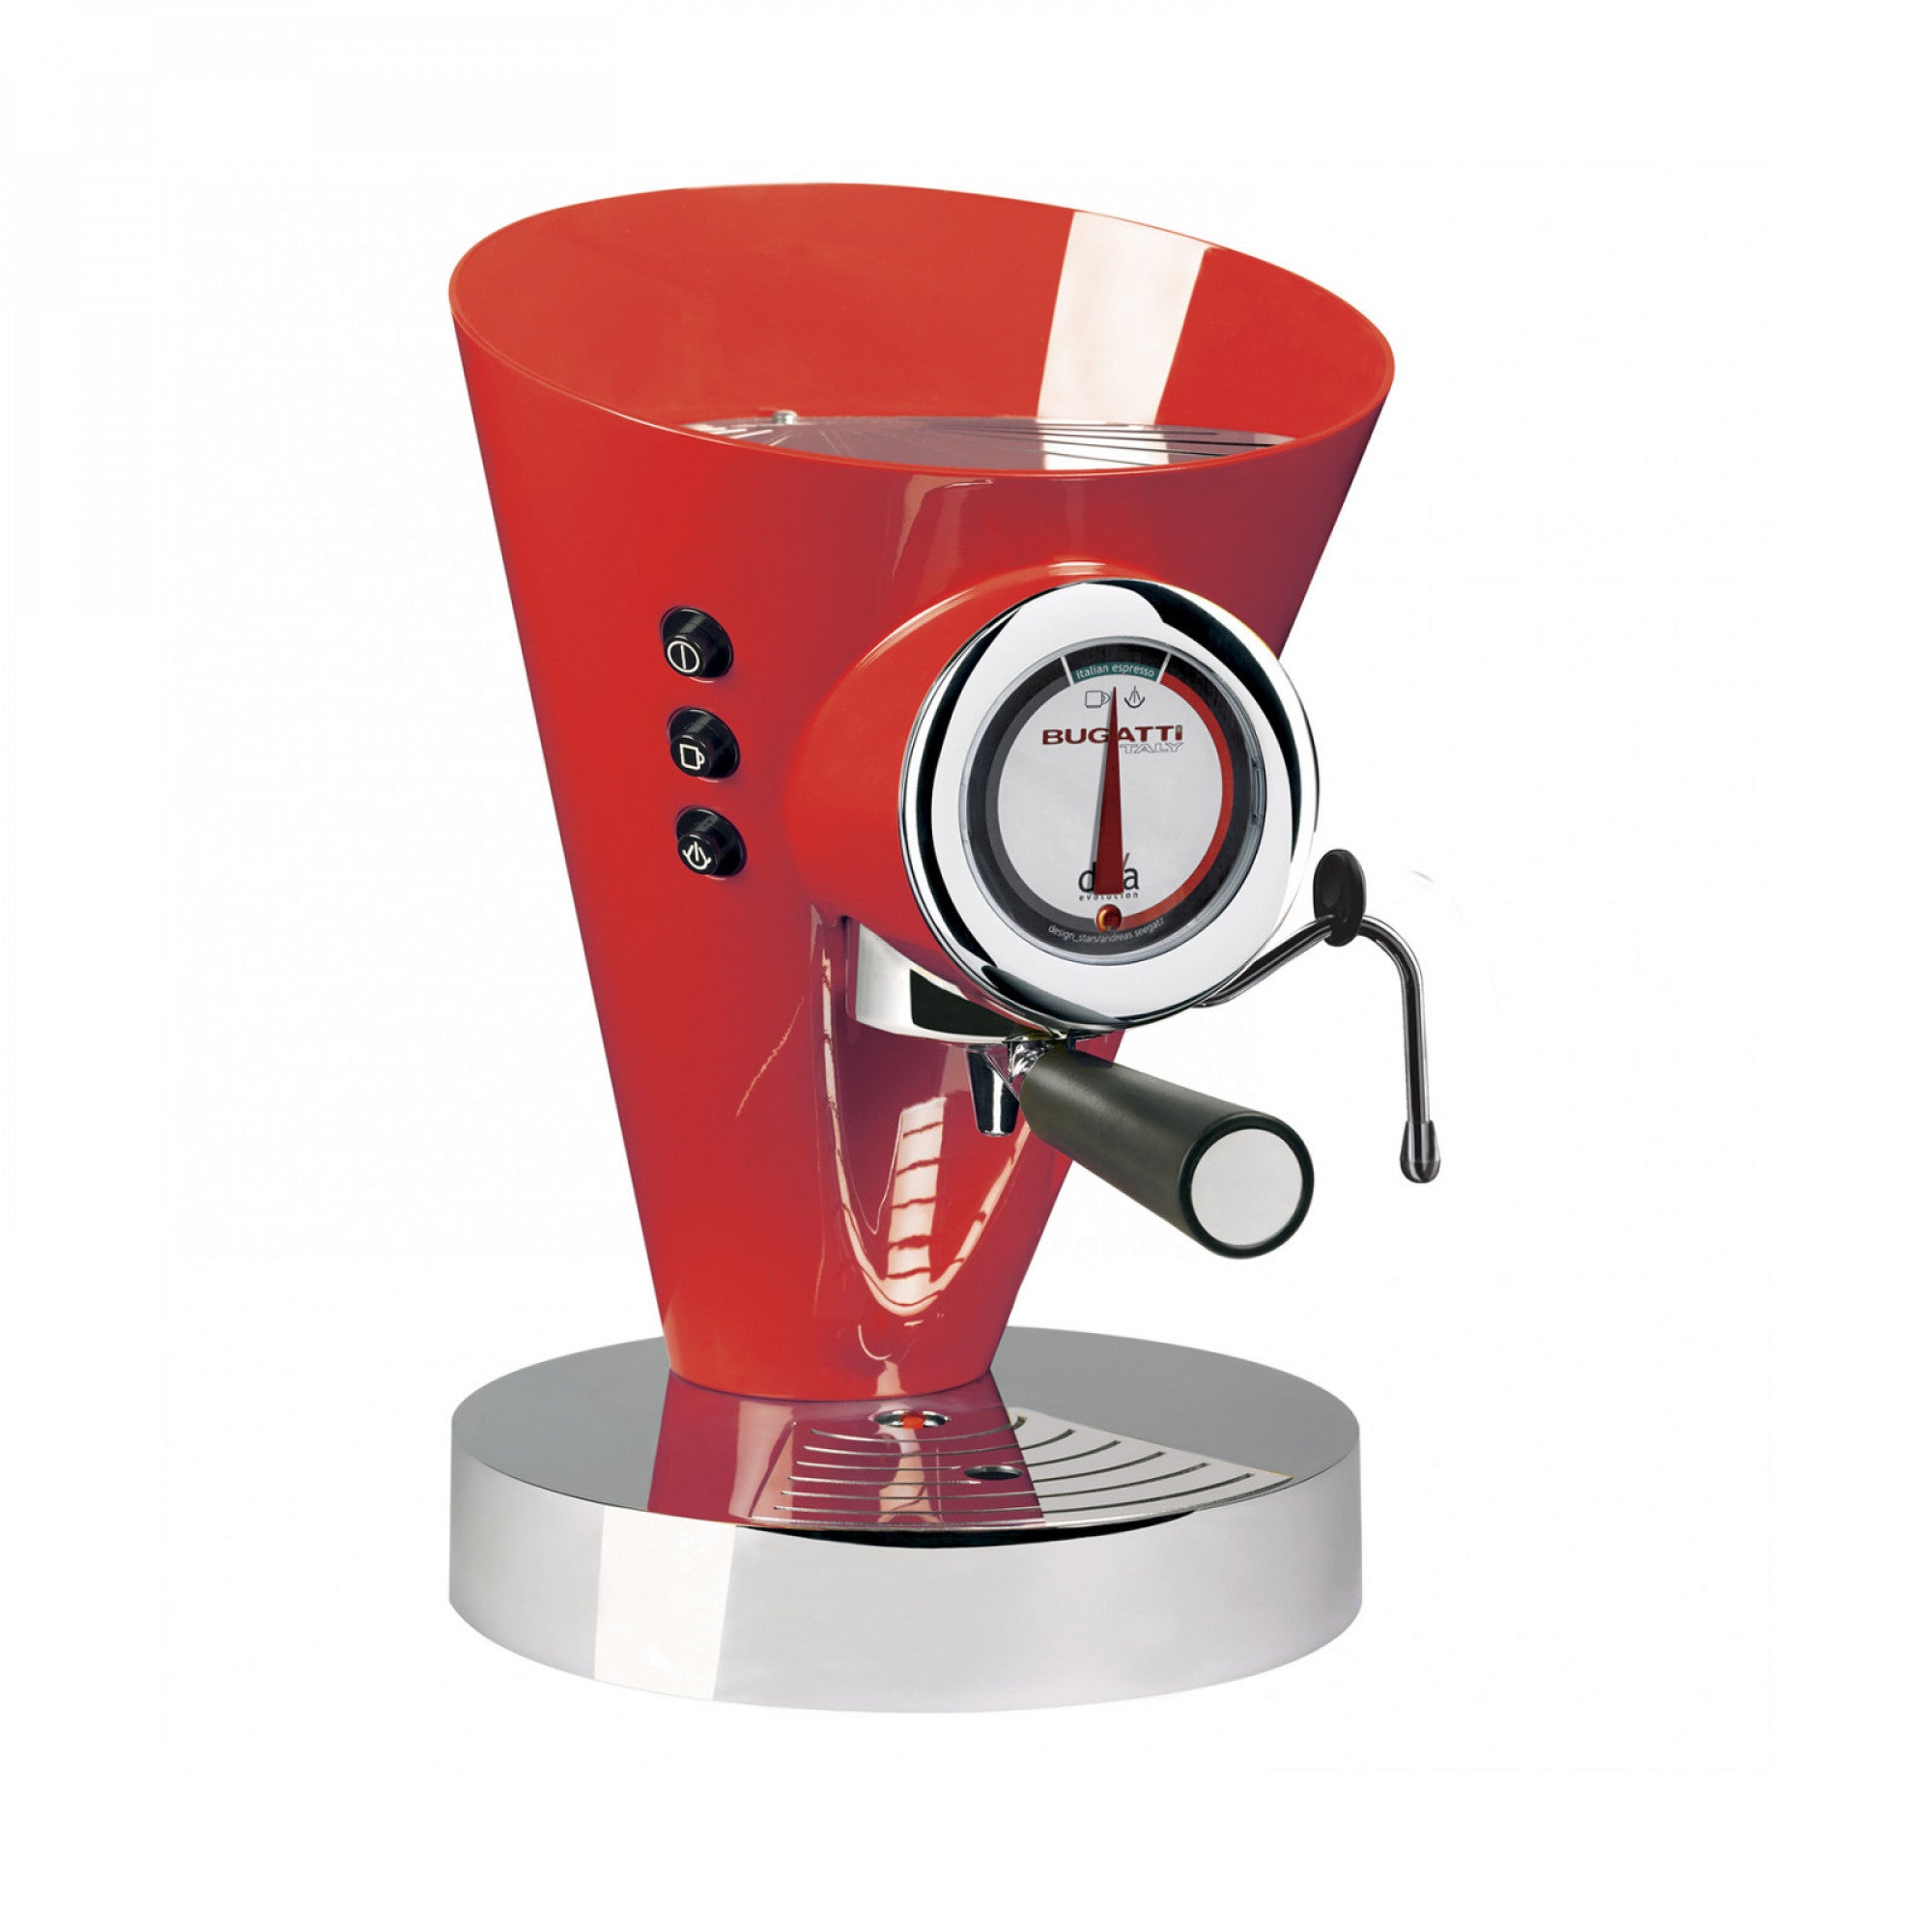 BUGATTI, Diva Evolution, Espresso- und Cappuccino-Kaffeemaschine, für gemahlenes Kaffeepulver und Pads, Non-Stop-Dampffunktion, 15 bar, 950 W, 0,8 Liter Fassungsvermögen, elegantes Design